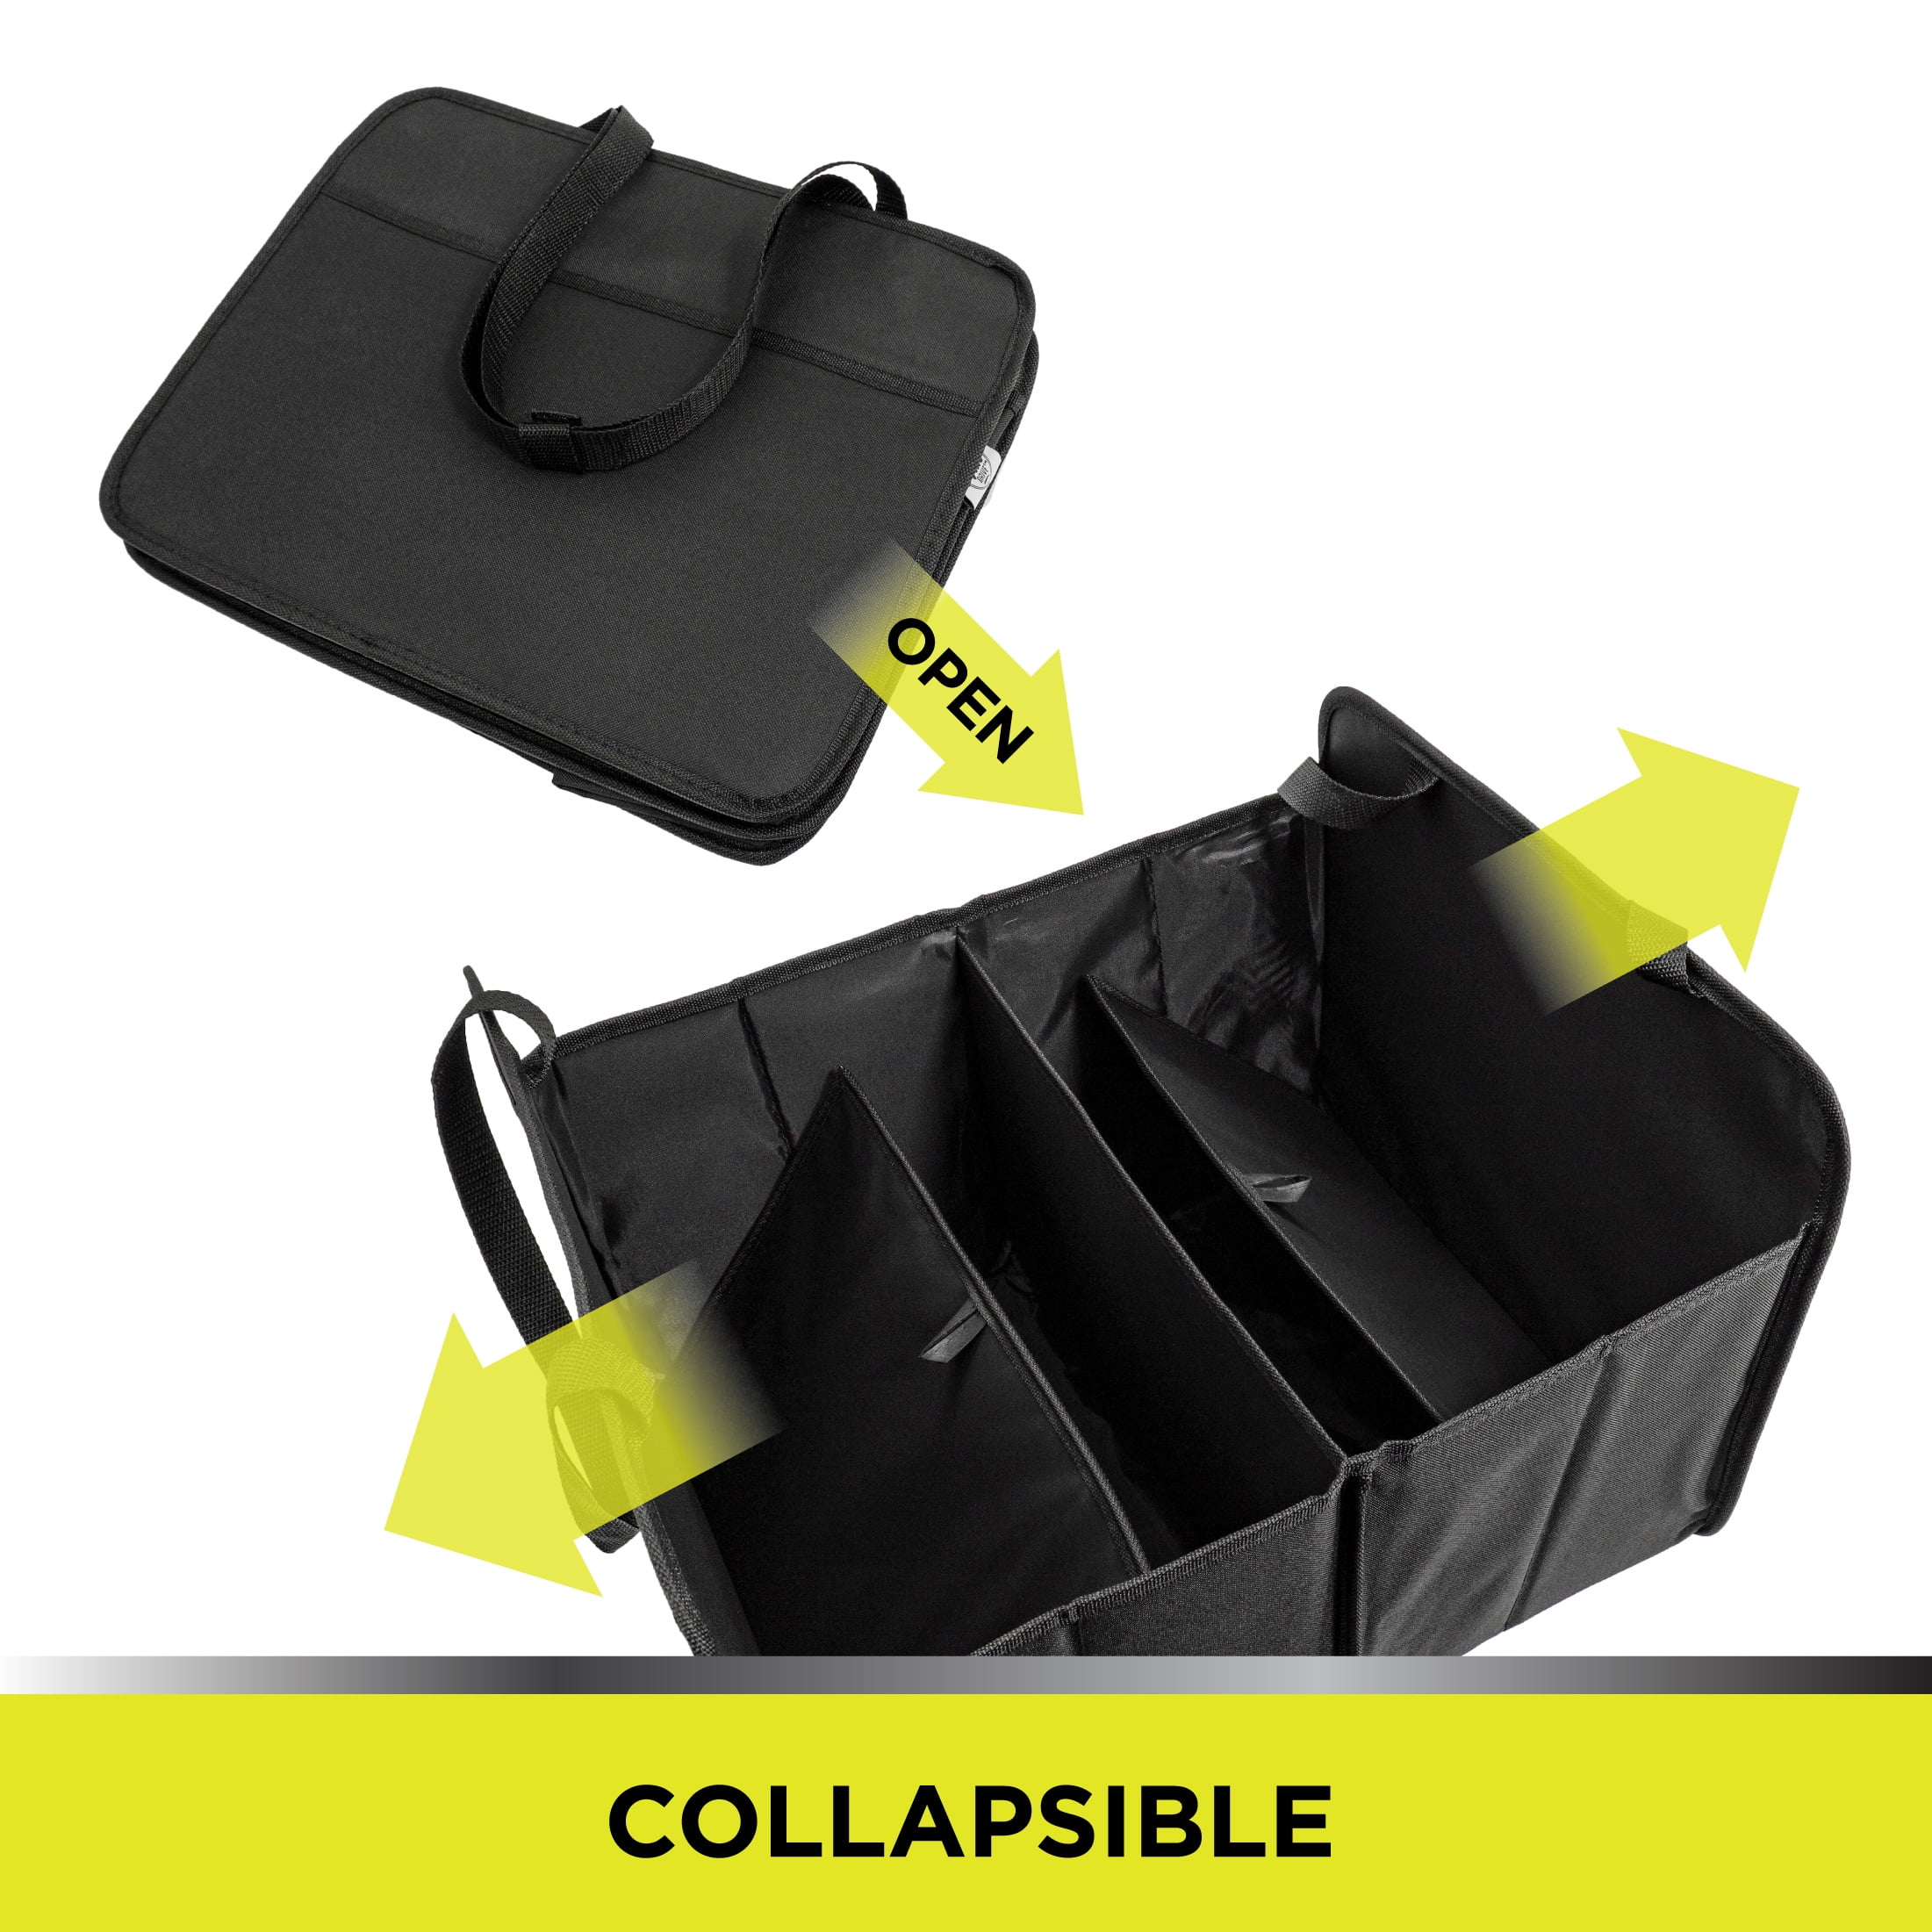 Drive Auto Car Organizer - Collapsible, Multi-Compartment